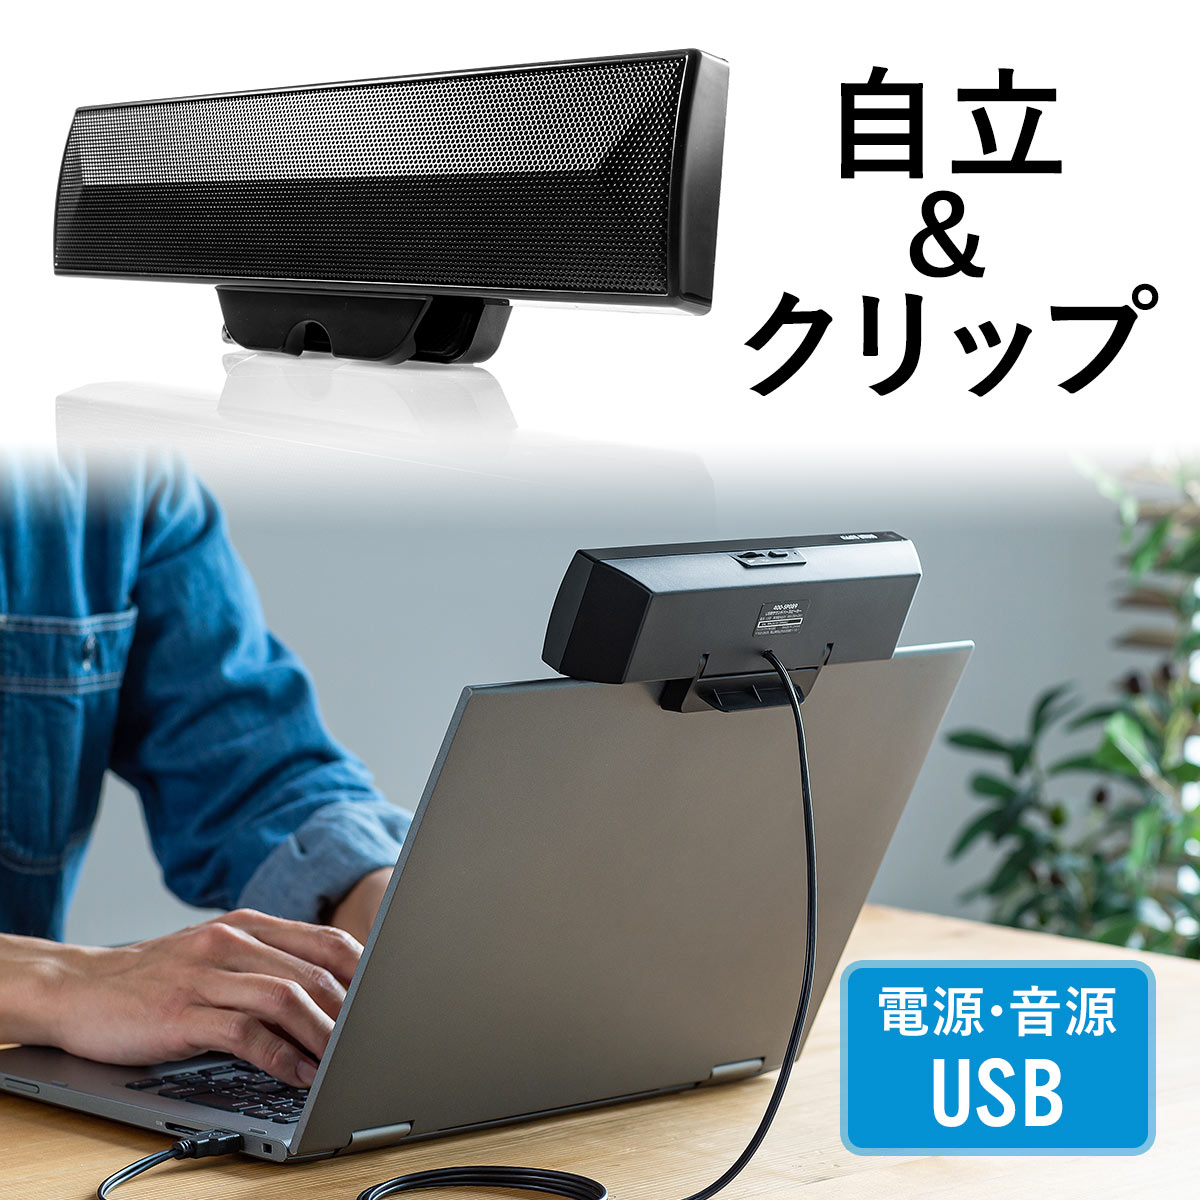 PCスピーカー サウンドバー USBスピーカー USB電源 USB接続 クリップスタンド対応 小型 コンパクト オシャレ 動画